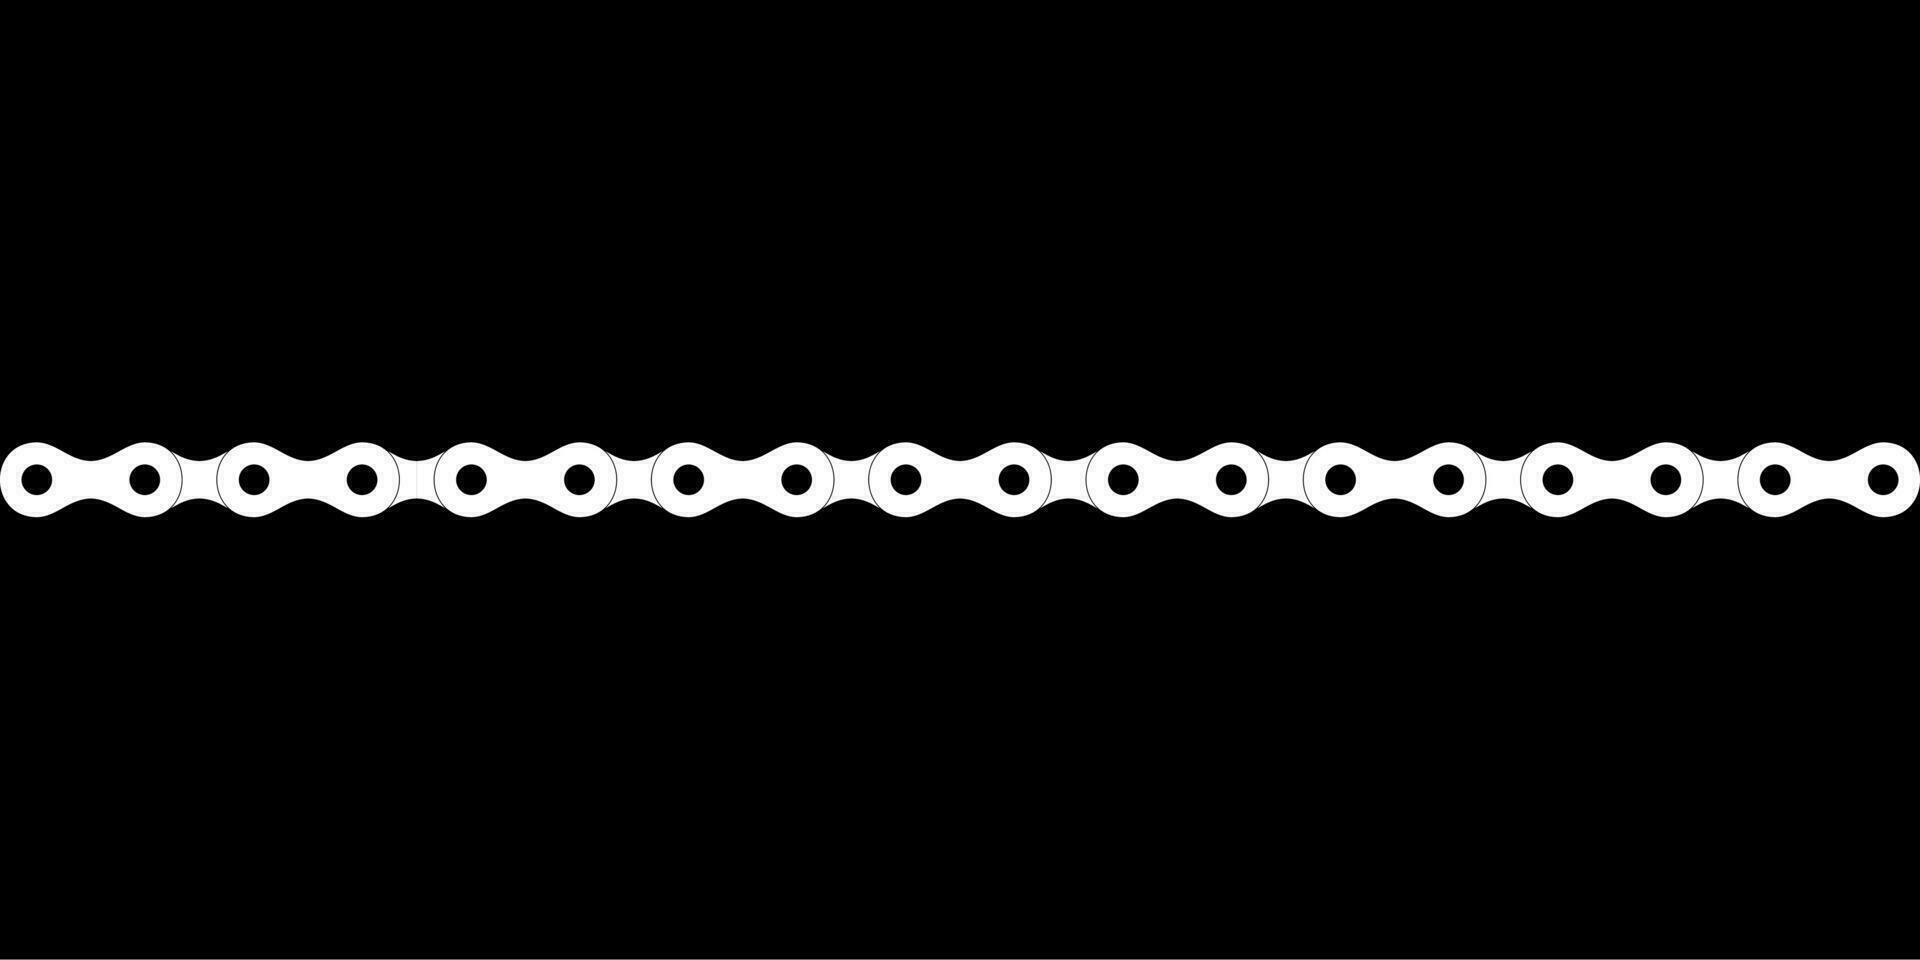 silhouette de le chaîne pour moto, bicyclette ou vélo, machinerie, pour art illustration, logo taper, pictogramme, site Internet ou graphique conception élément. vecteur illustration